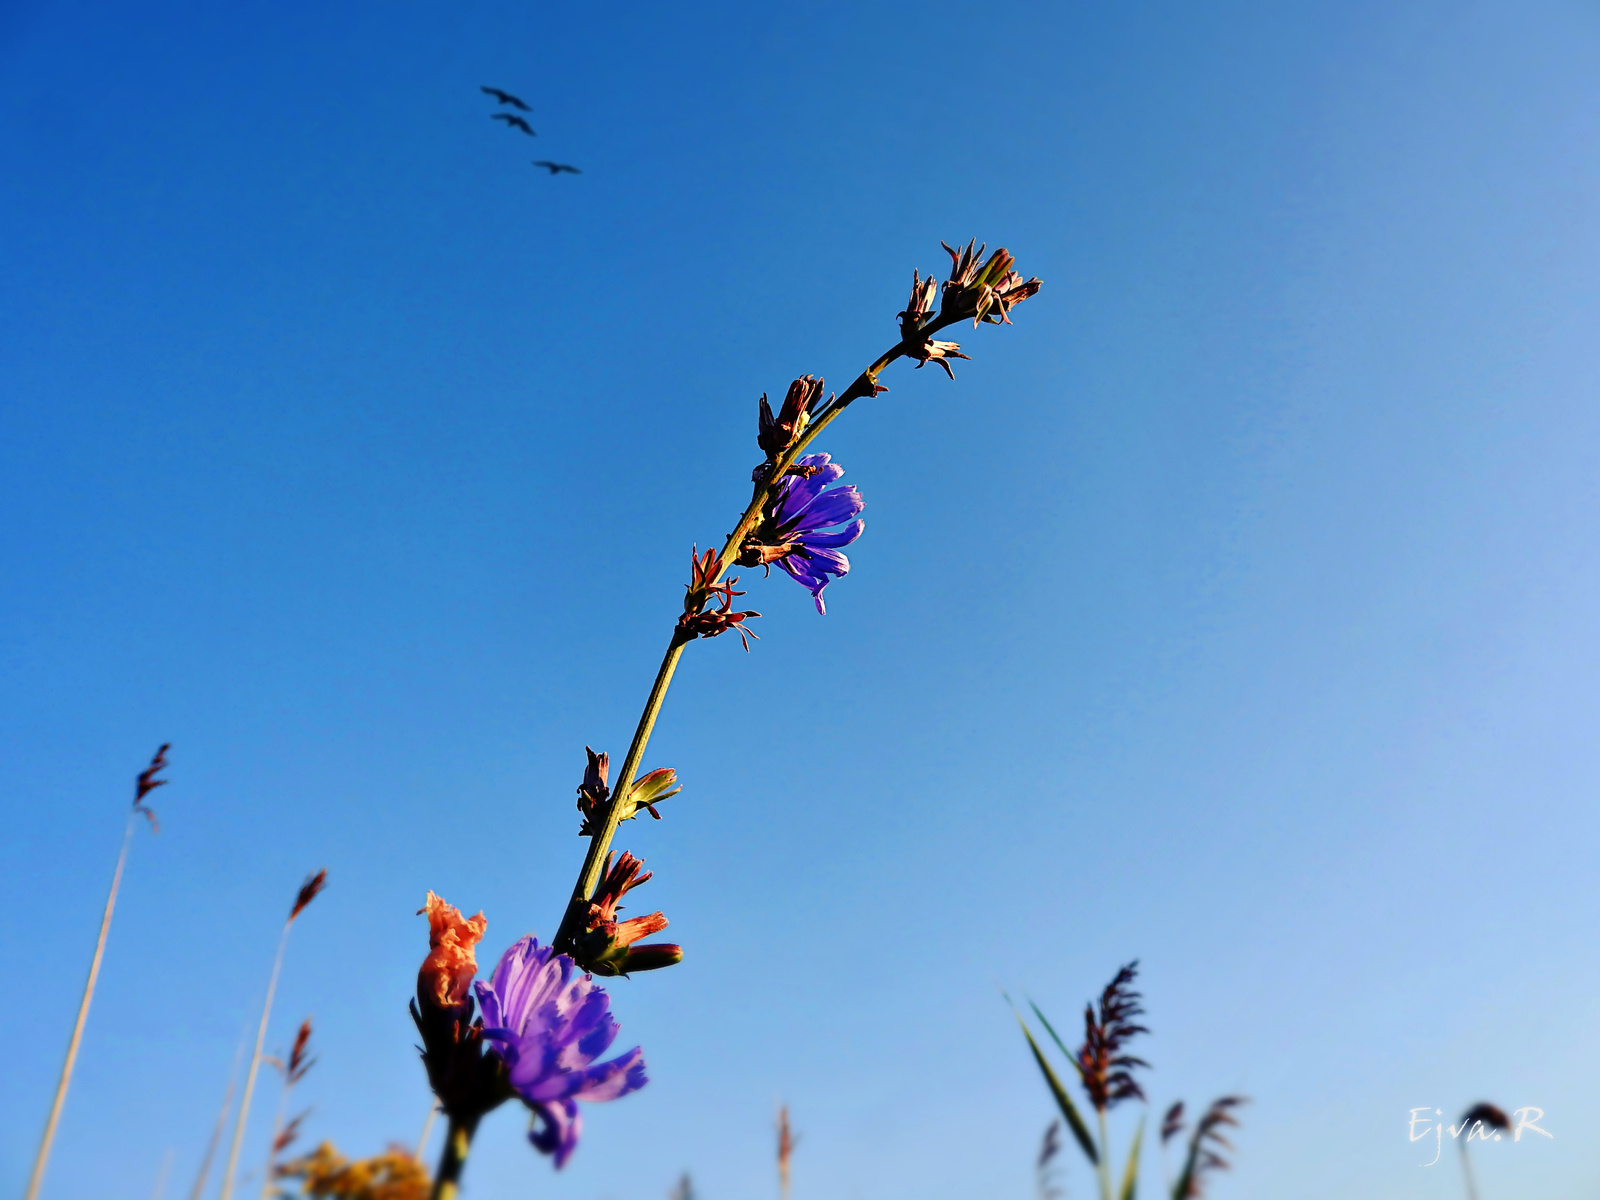 Mező Virág Reggel Mezei katáng (Cicorium intybus)